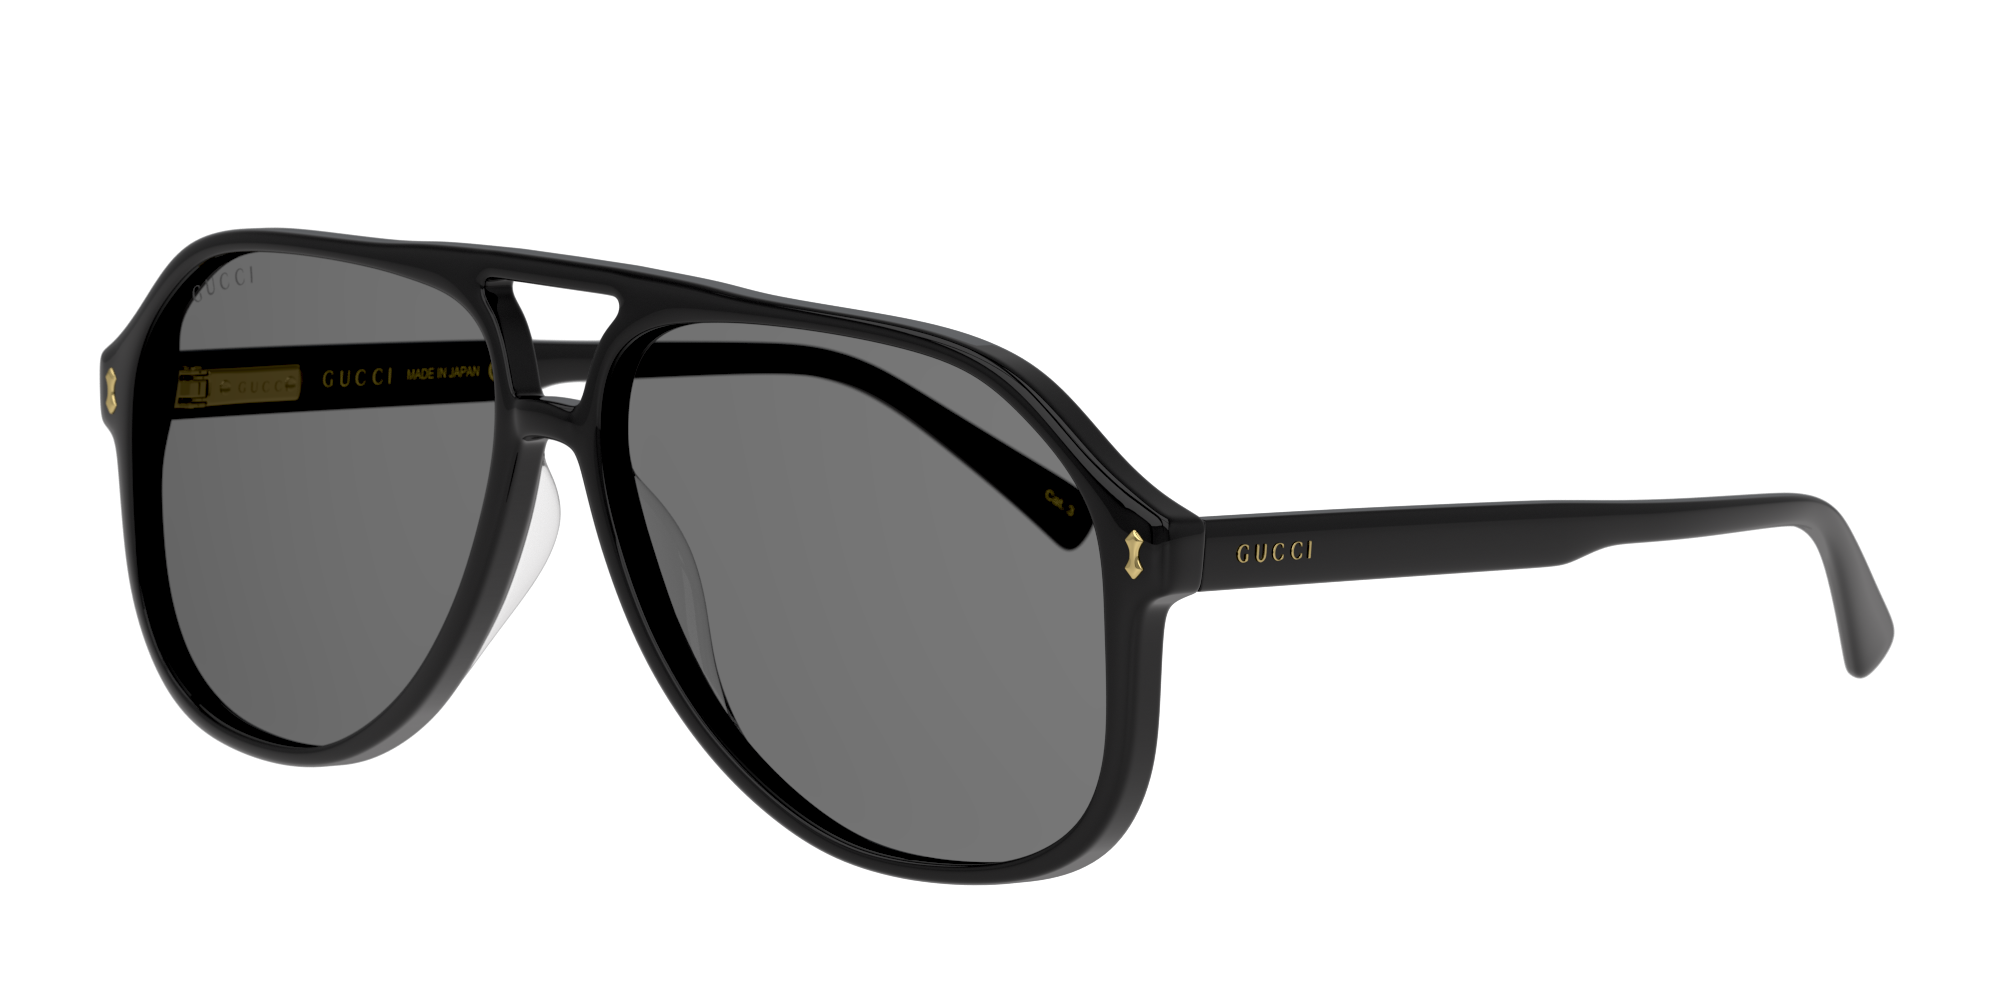 Angle_Left01 Gucci GG 1042S Sunglasses Grey / Black